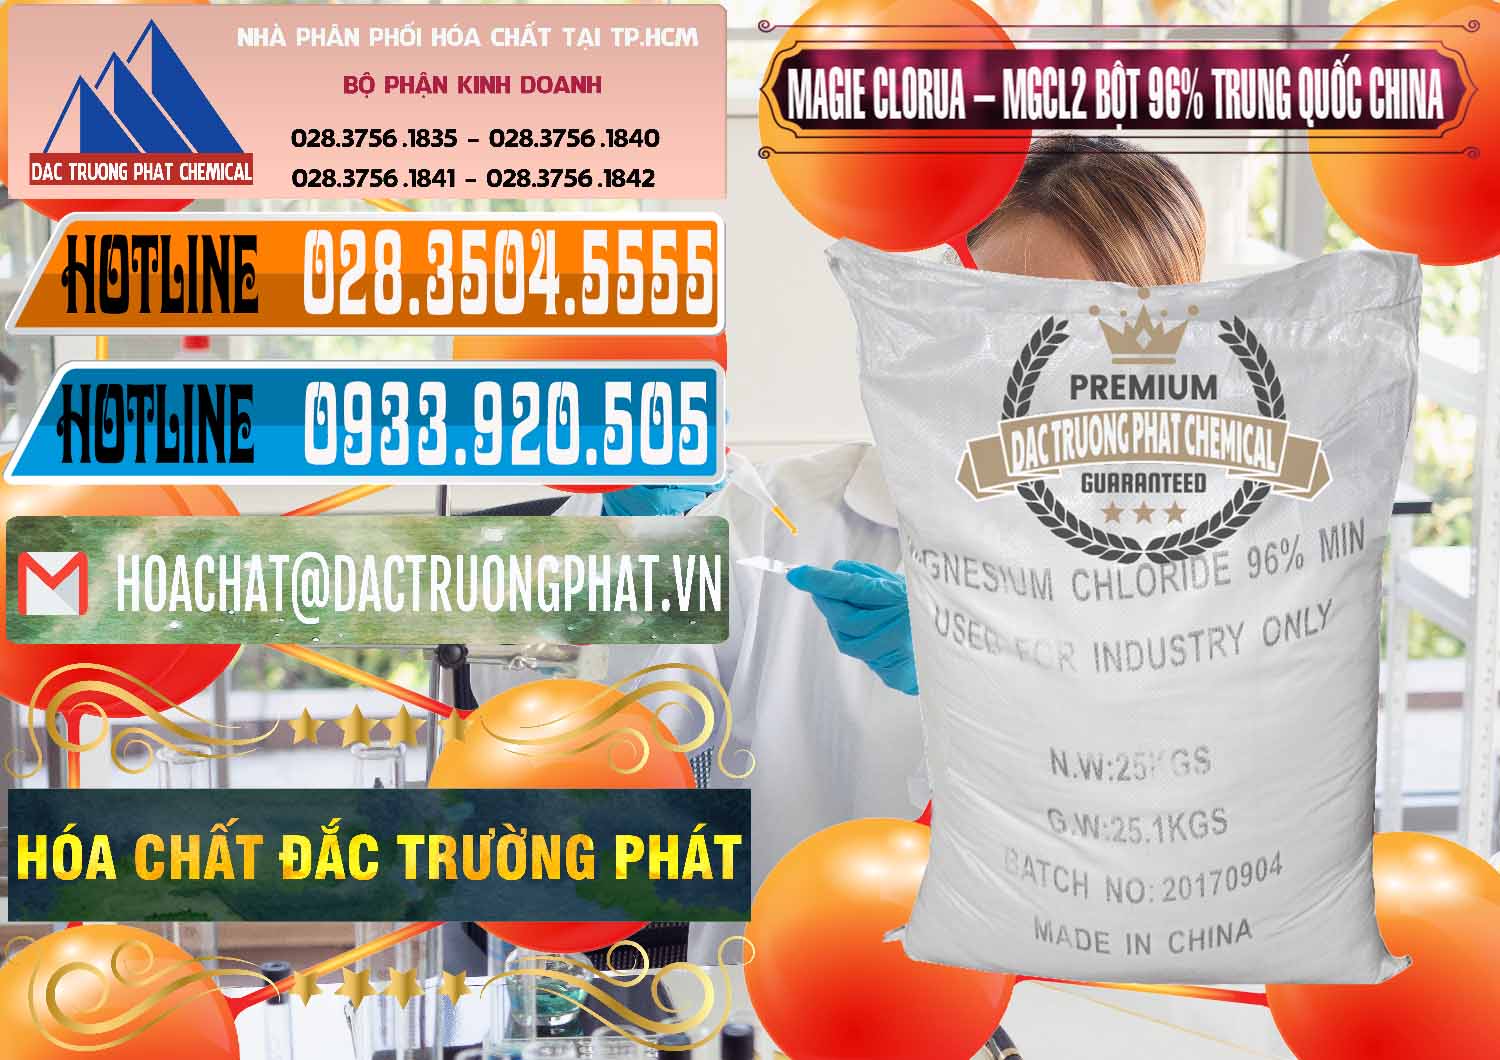 Cty phân phối _ bán Magie Clorua – MGCL2 96% Dạng Bột Bao Chữ Đen Trung Quốc China - 0205 - Nhà cung ứng & phân phối hóa chất tại TP.HCM - stmp.net